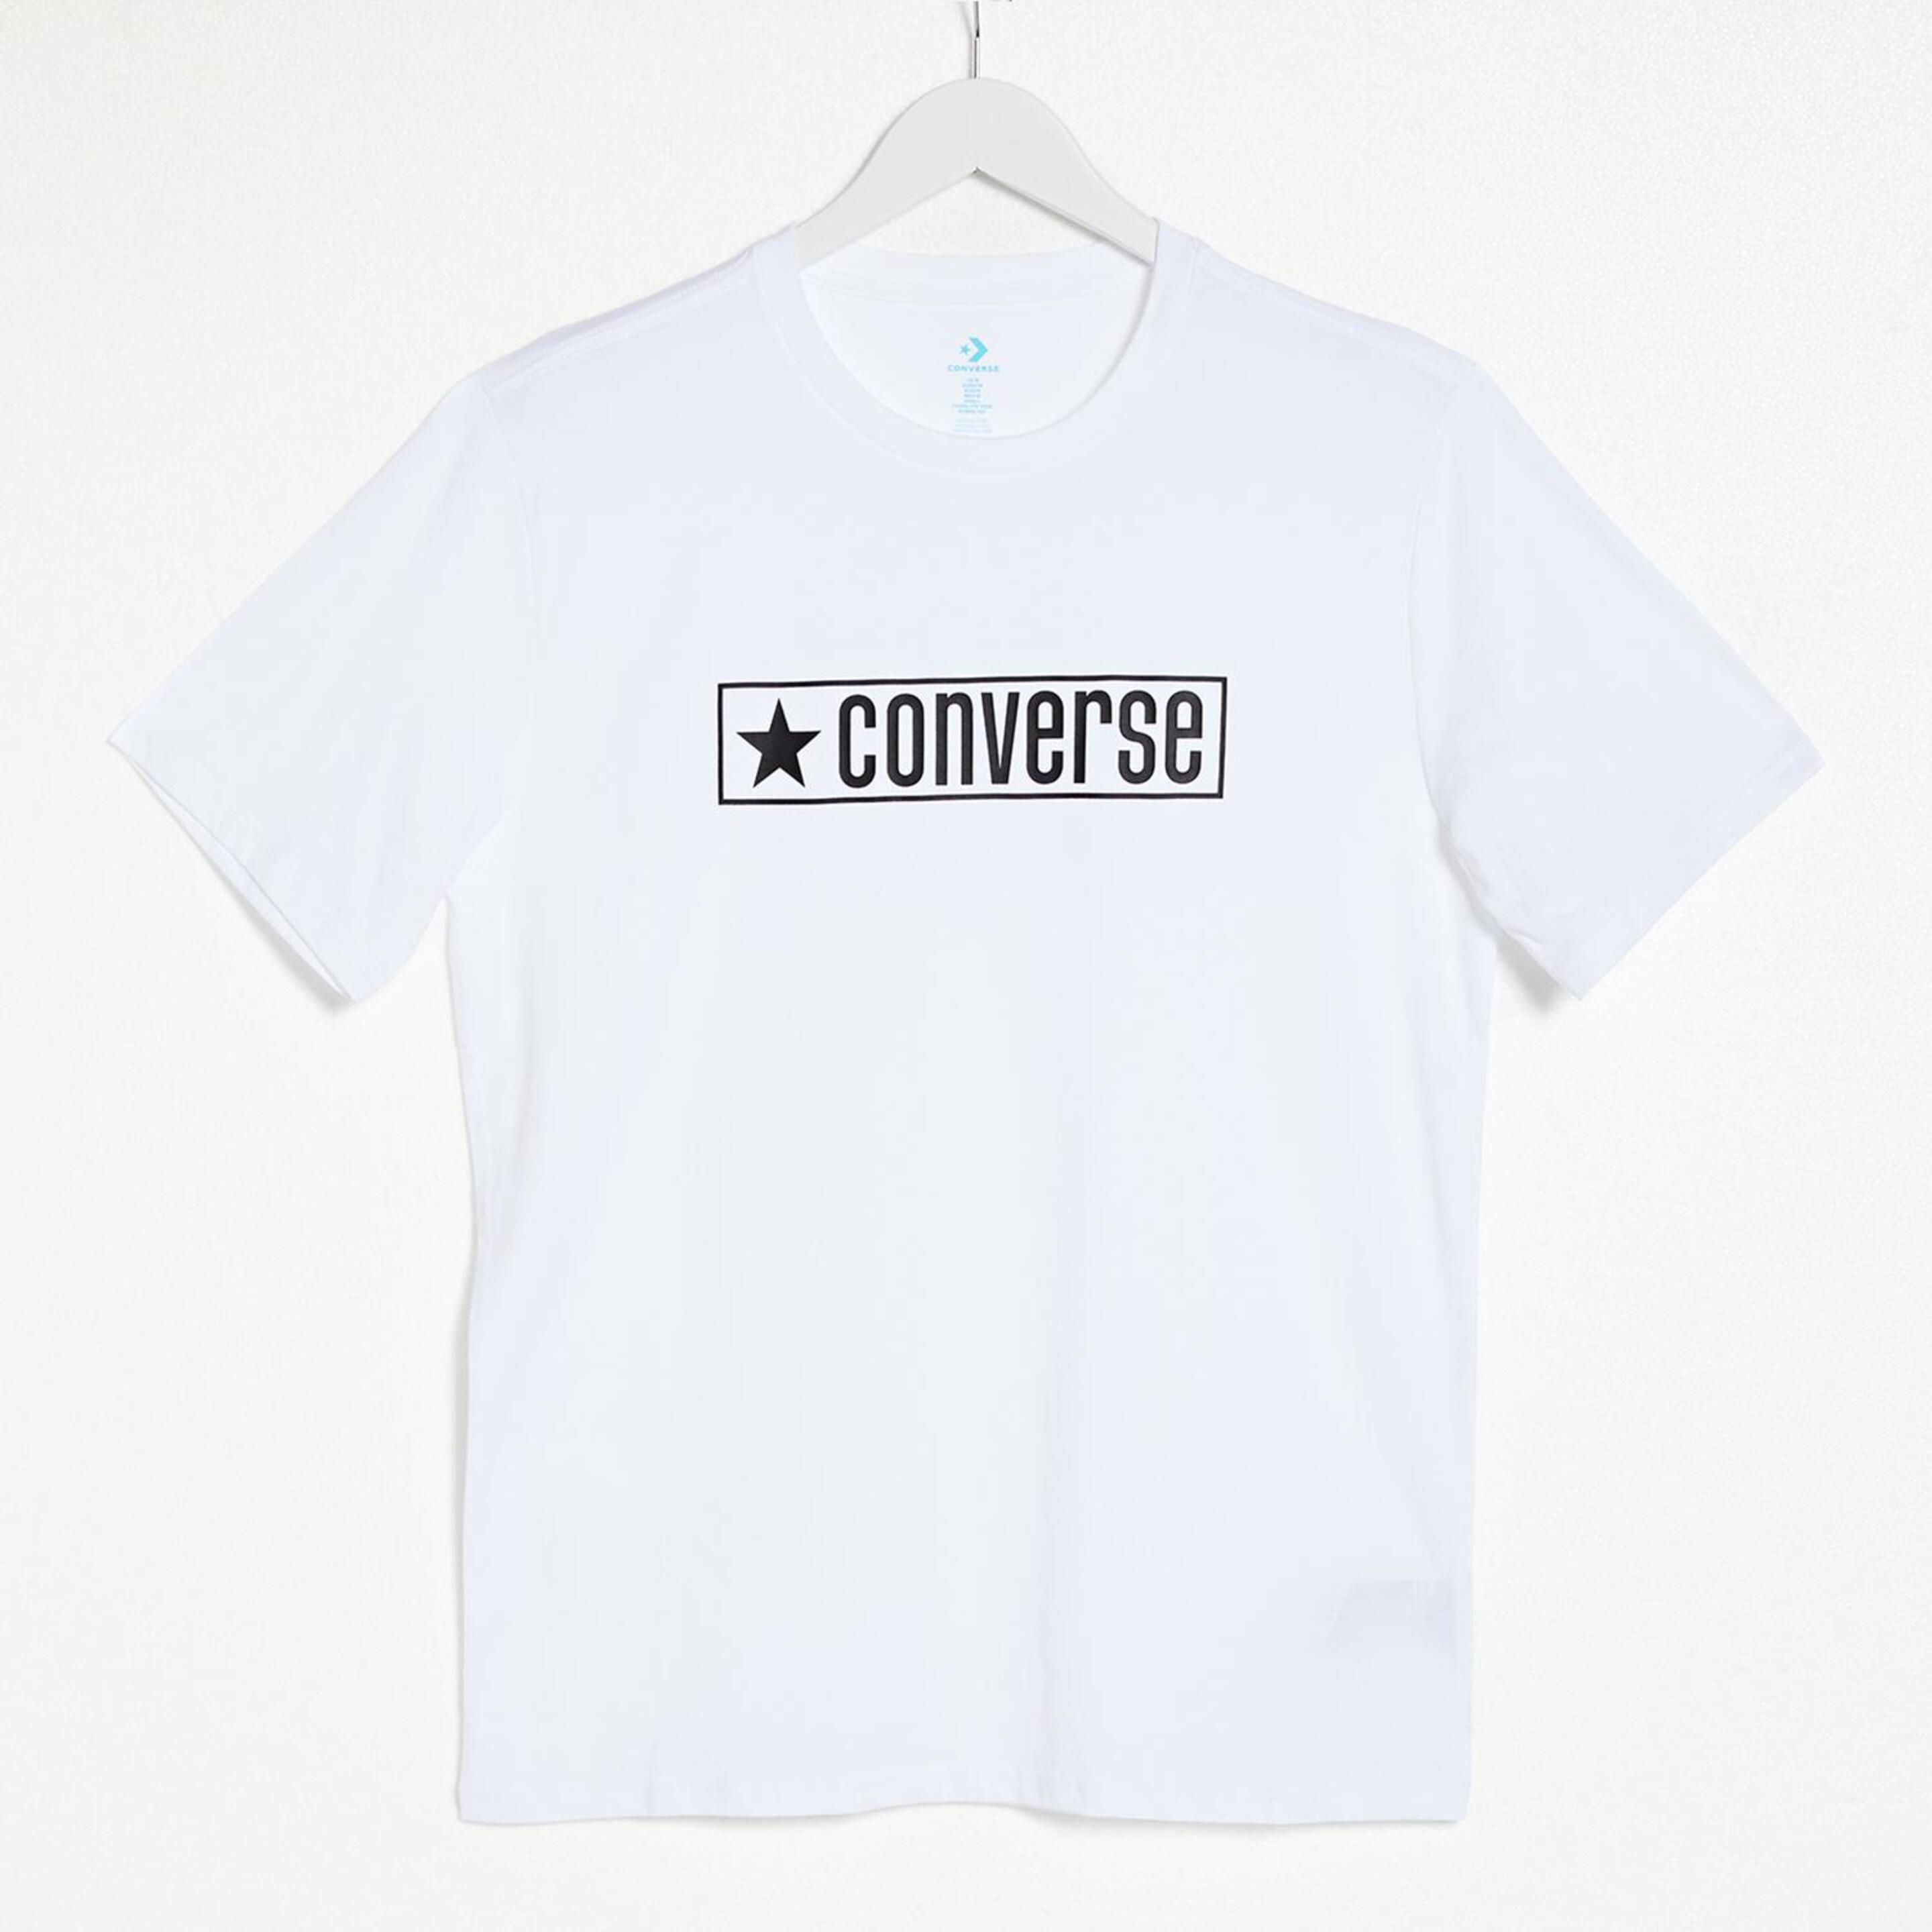 Camiseta Converse